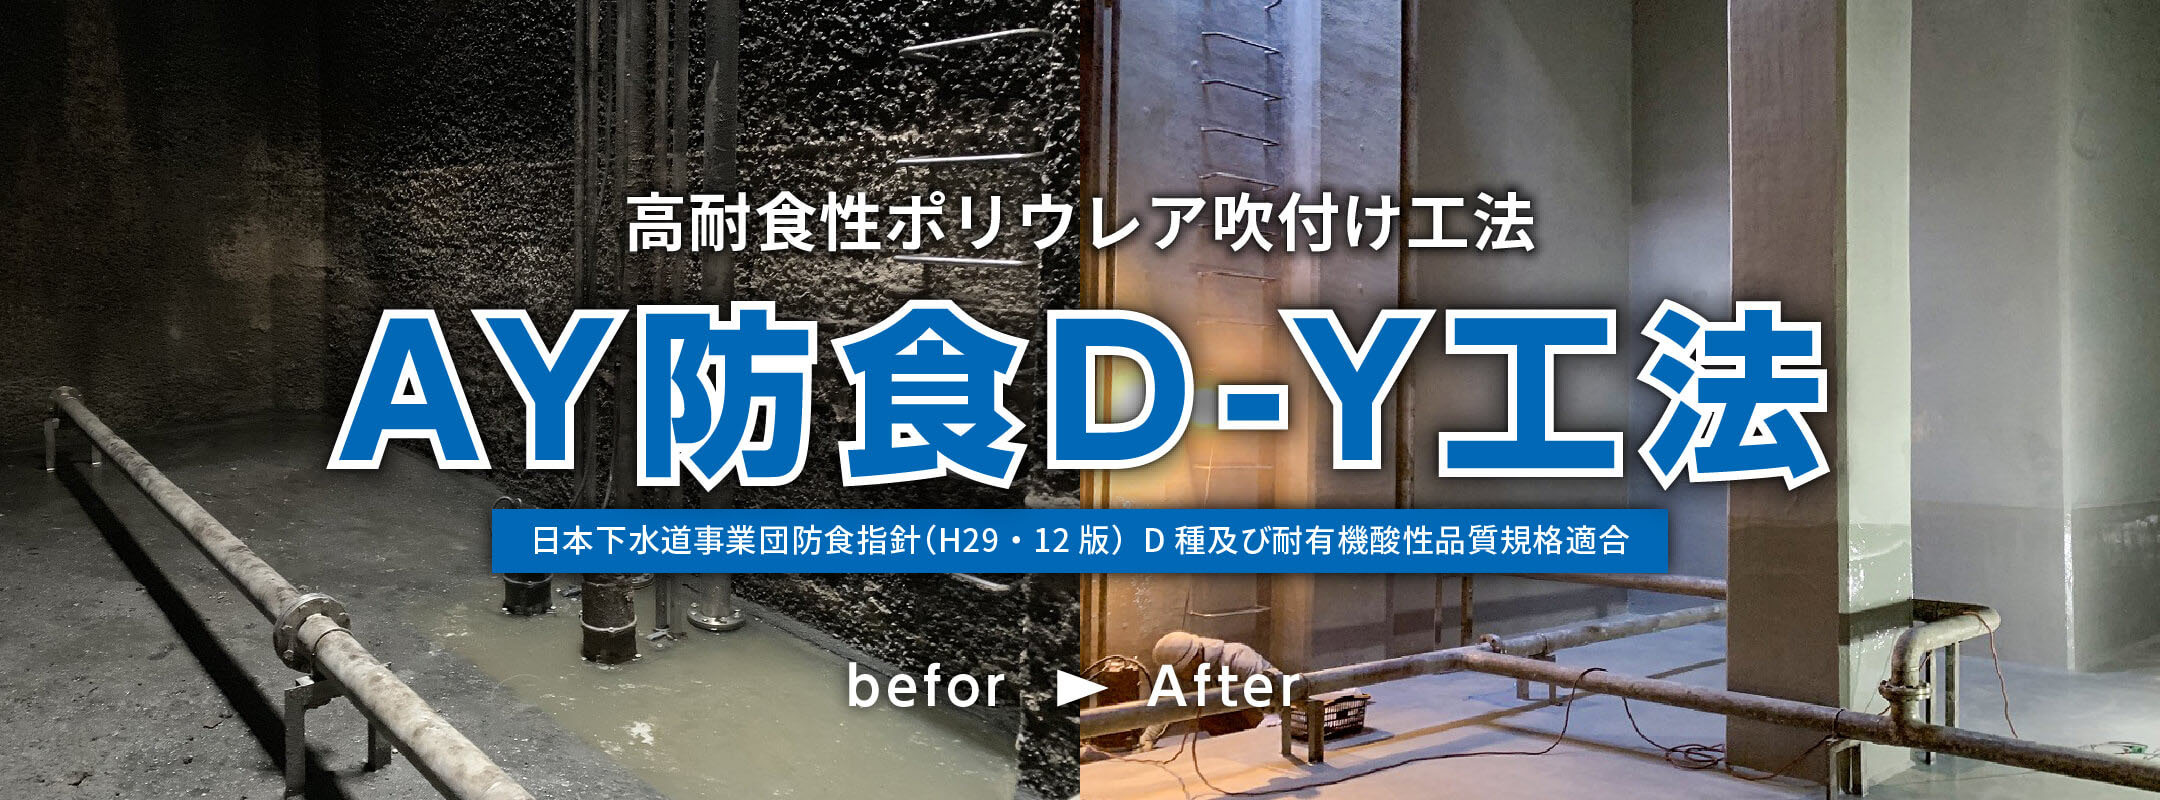 高耐食性ポリウレア吹付け工法 AY防食D-Y工法 日本下水道事業団防食指針(H29・12版)  D種及び耐有機酸性品質規格適合